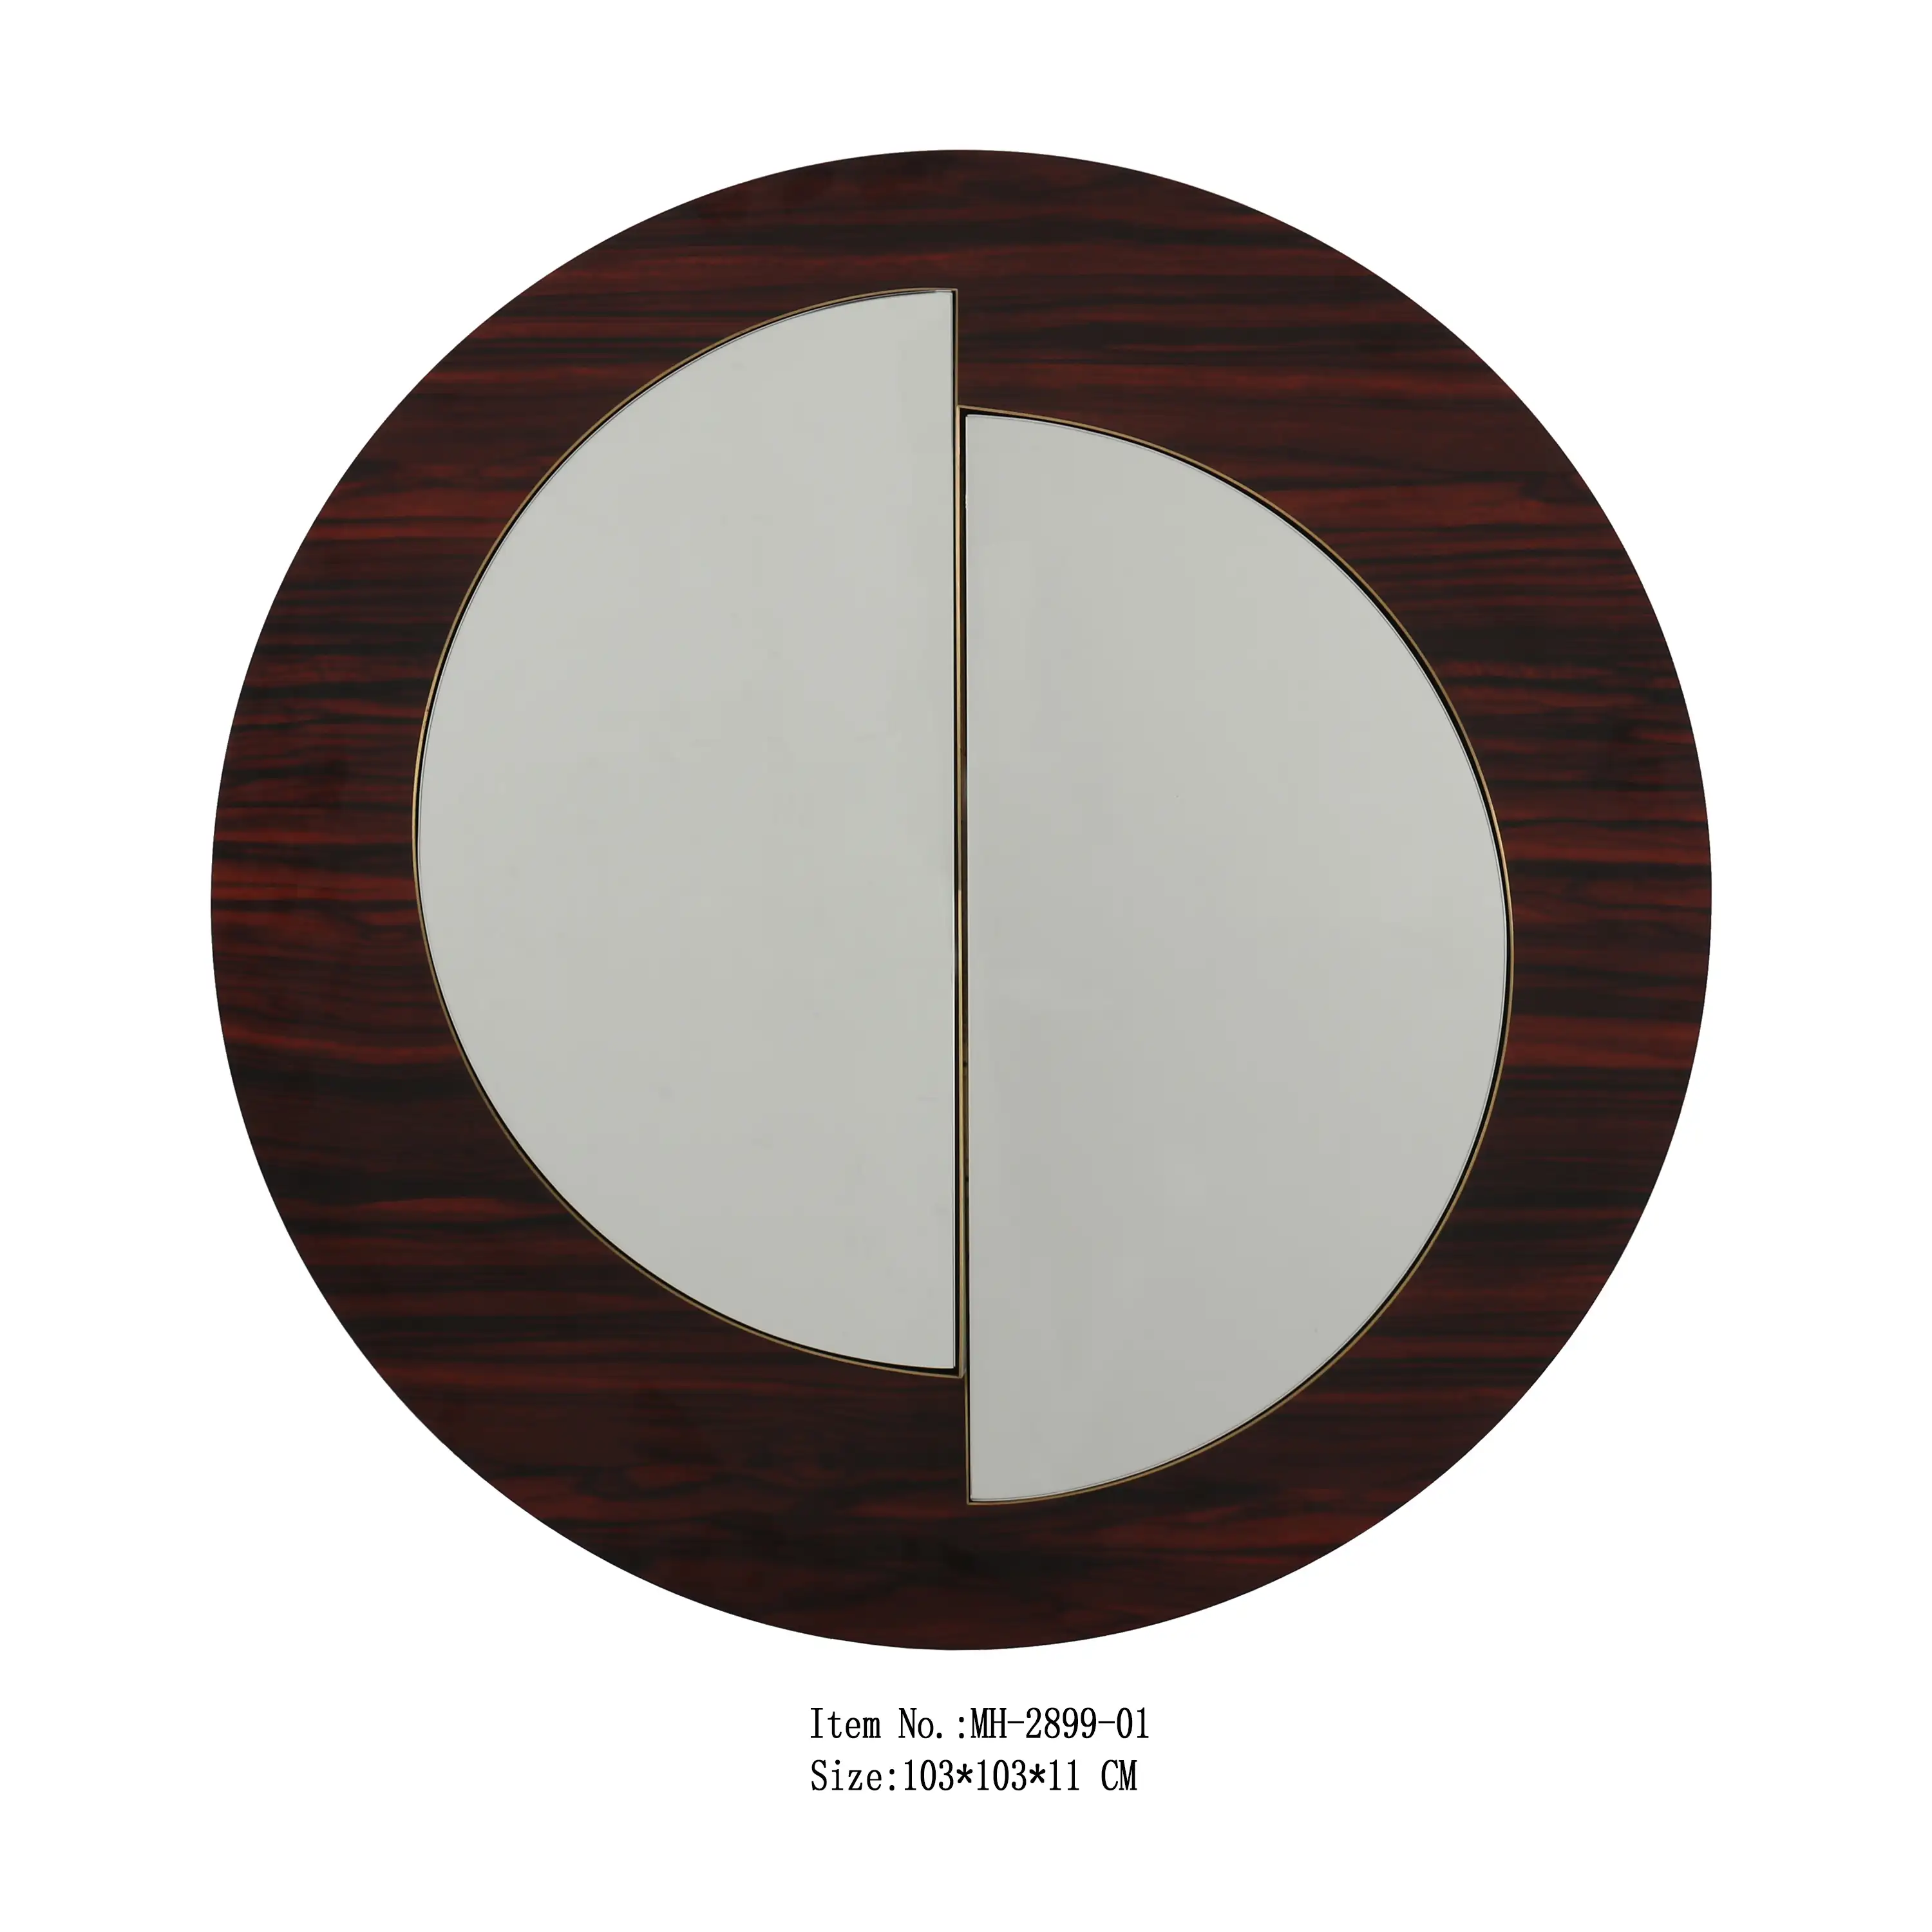 Резная круглая зеркальная рамка ручной работы из орехового дерева цвета